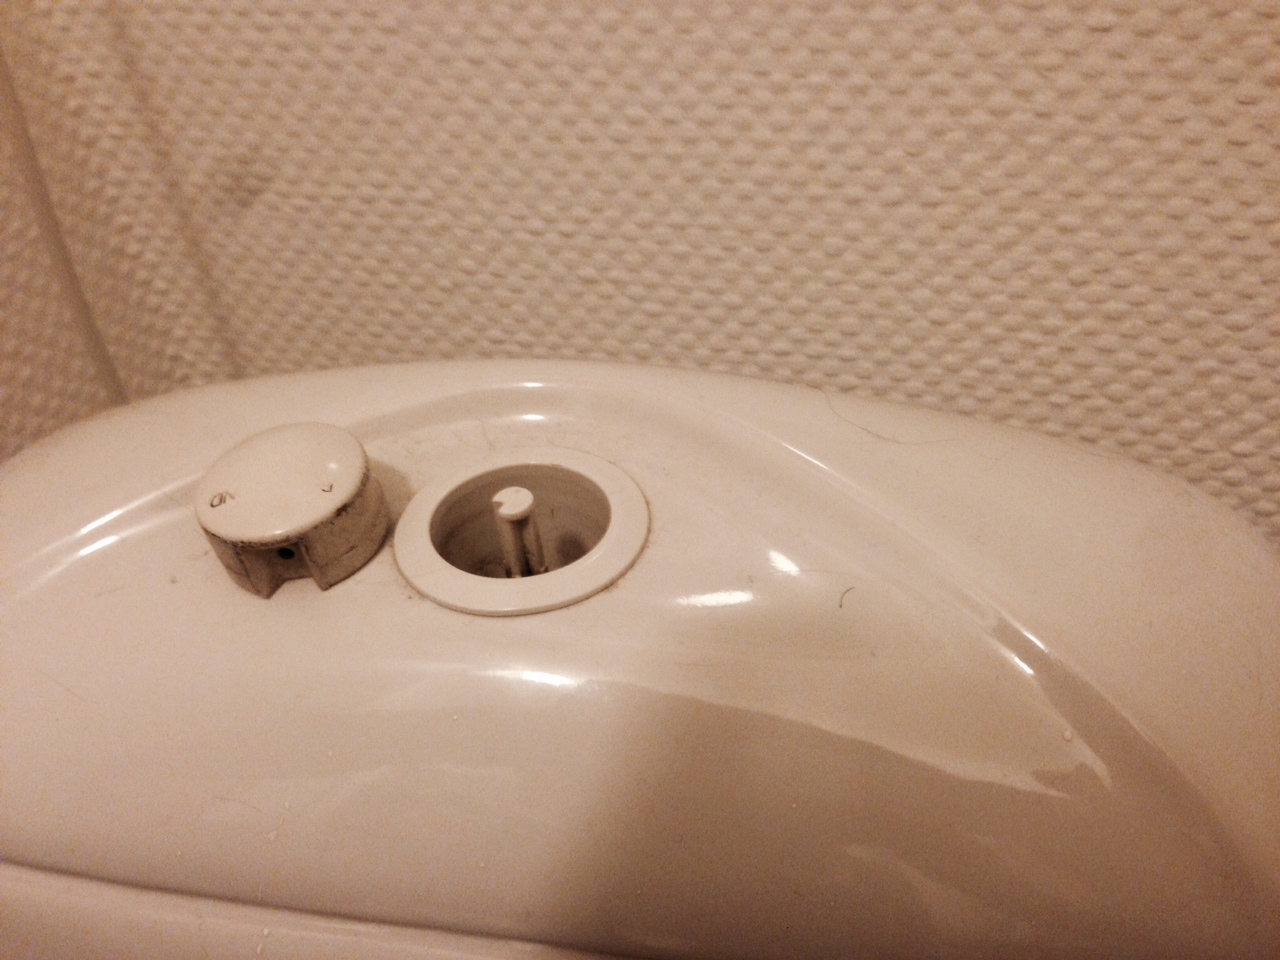 Hjelp til å åpne sisterne på toalett - bilde 3.JPG - bighc